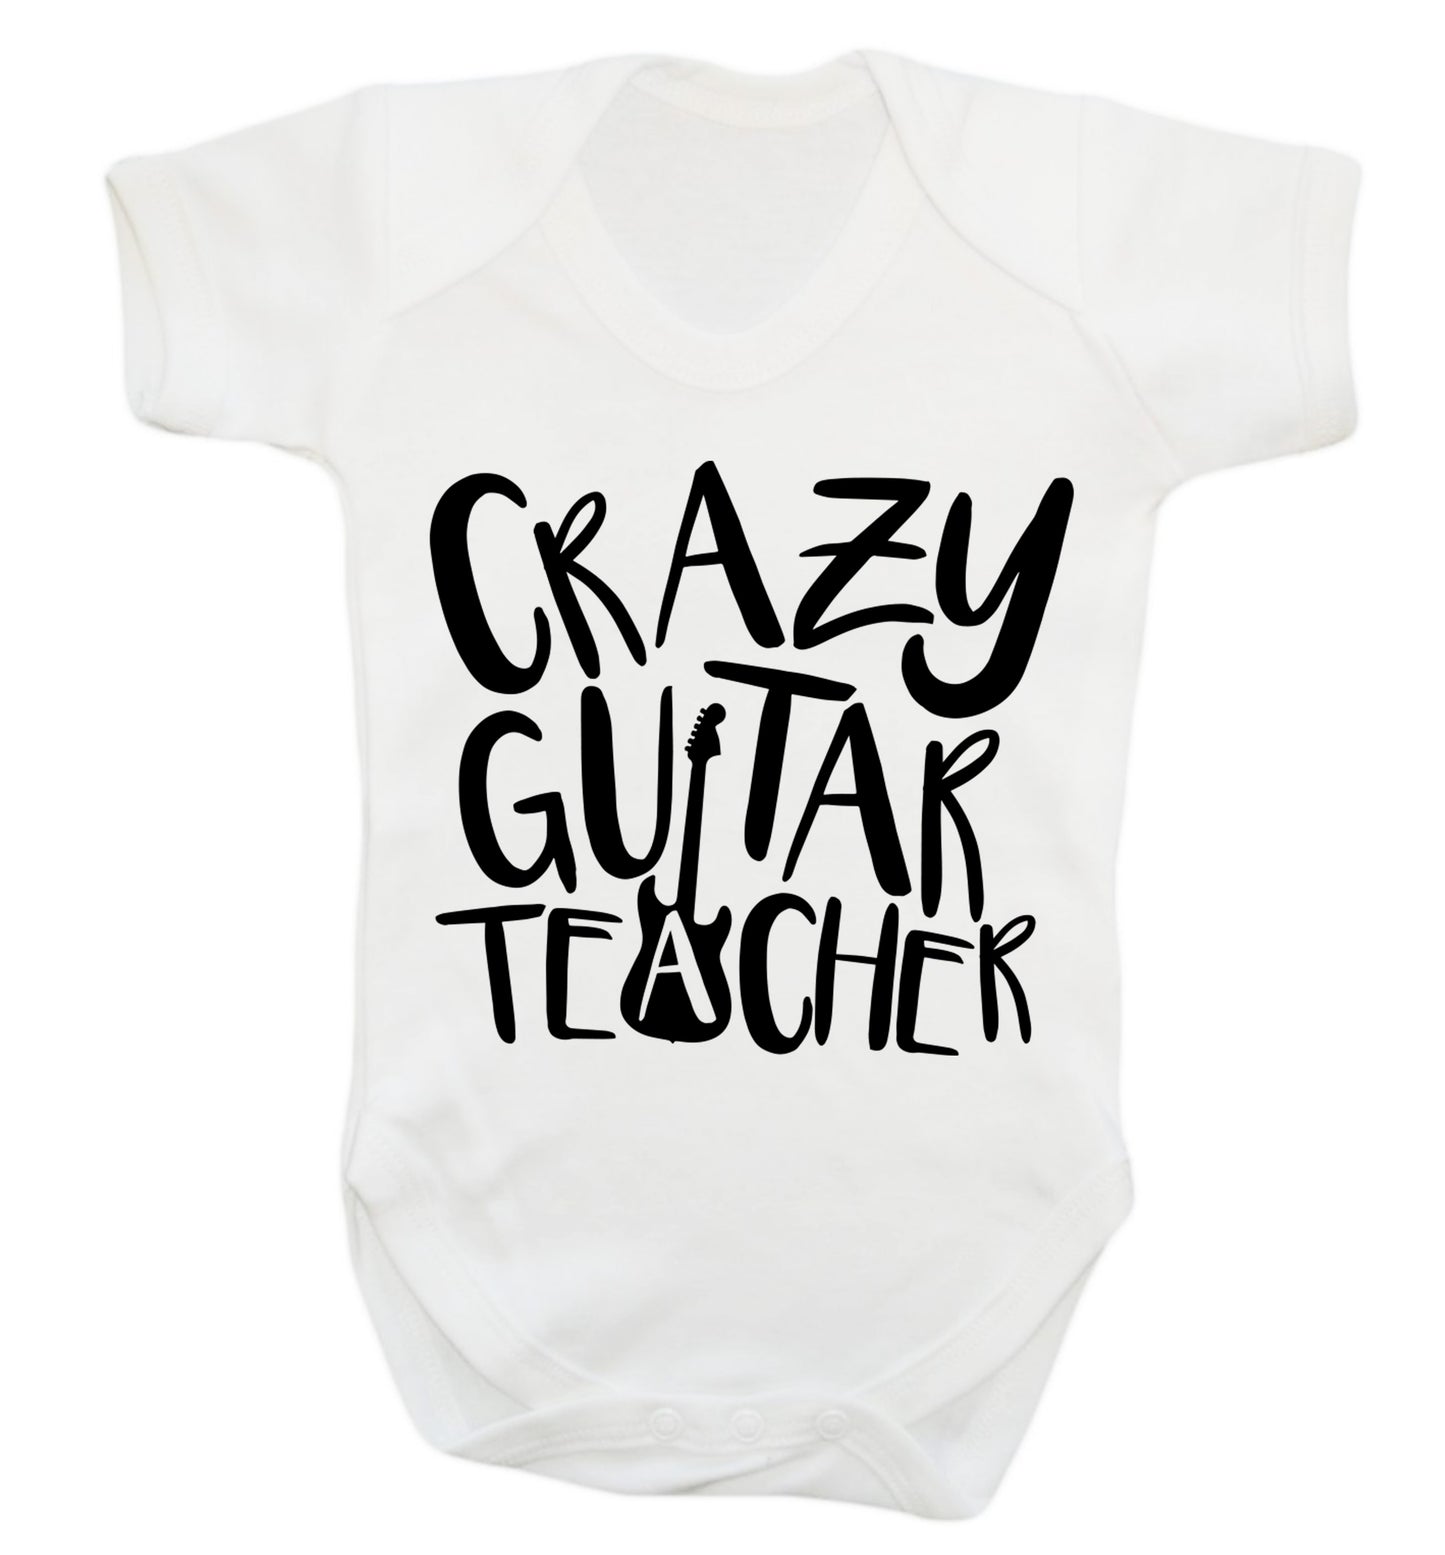 Crazy guitar teacher Baby Vest white 18-24 months